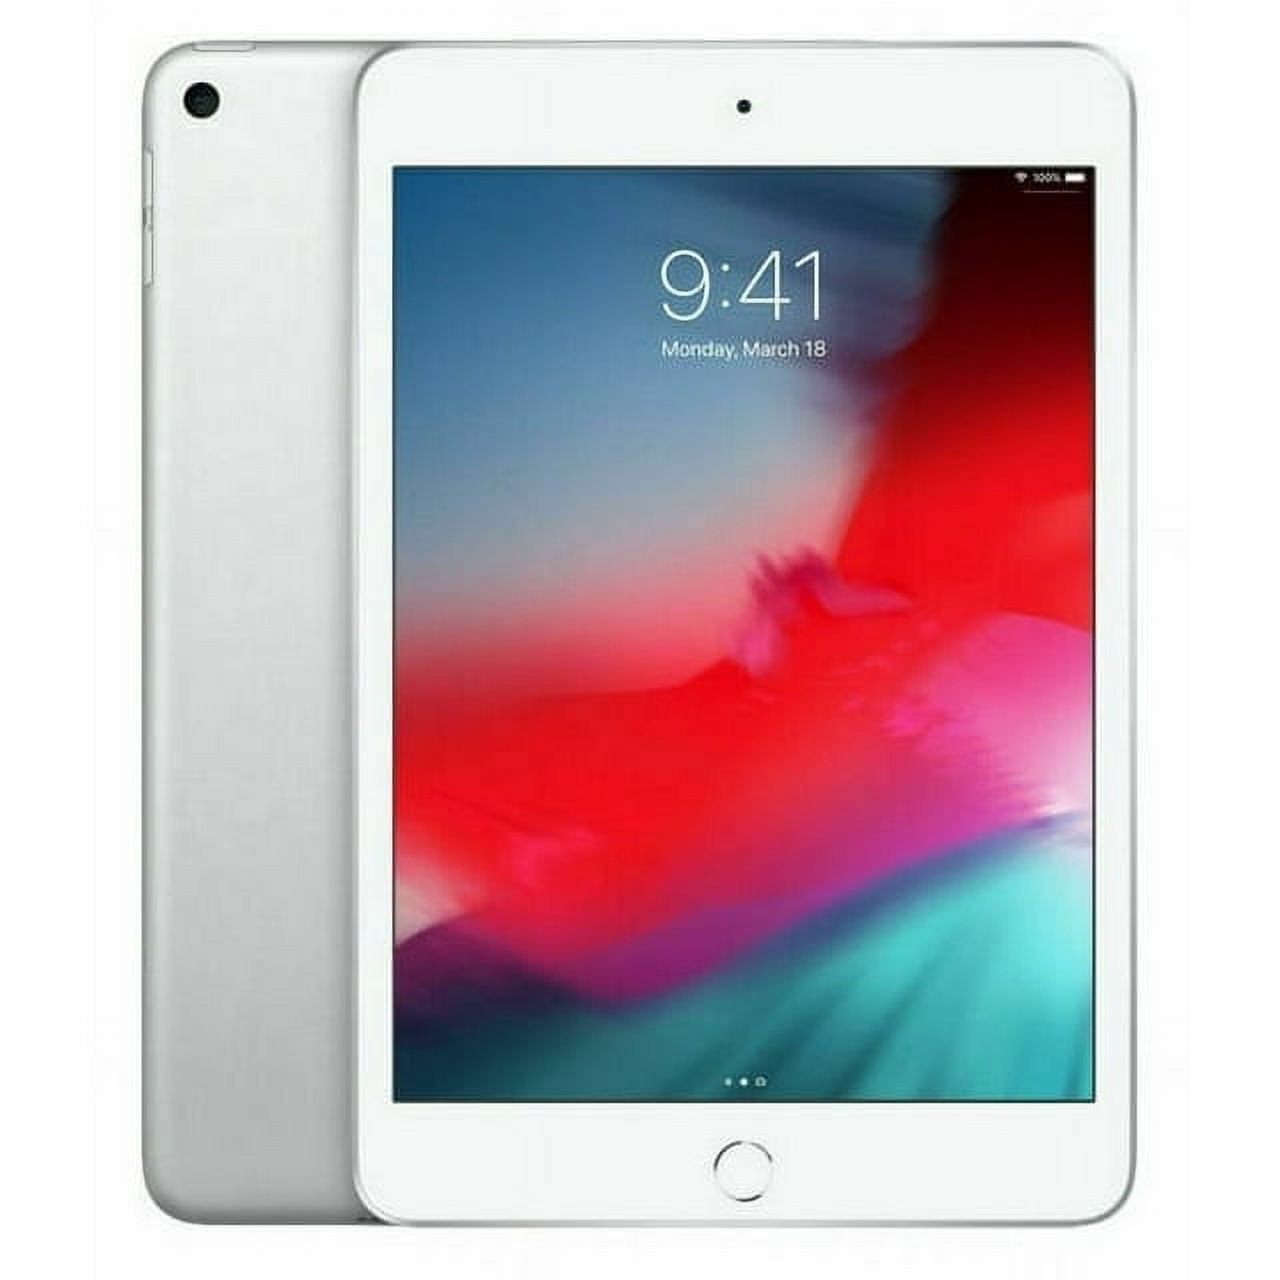 Apple iPad mini 2 16GB Wi-Fi + ATu0026T - Black - Walmart.com